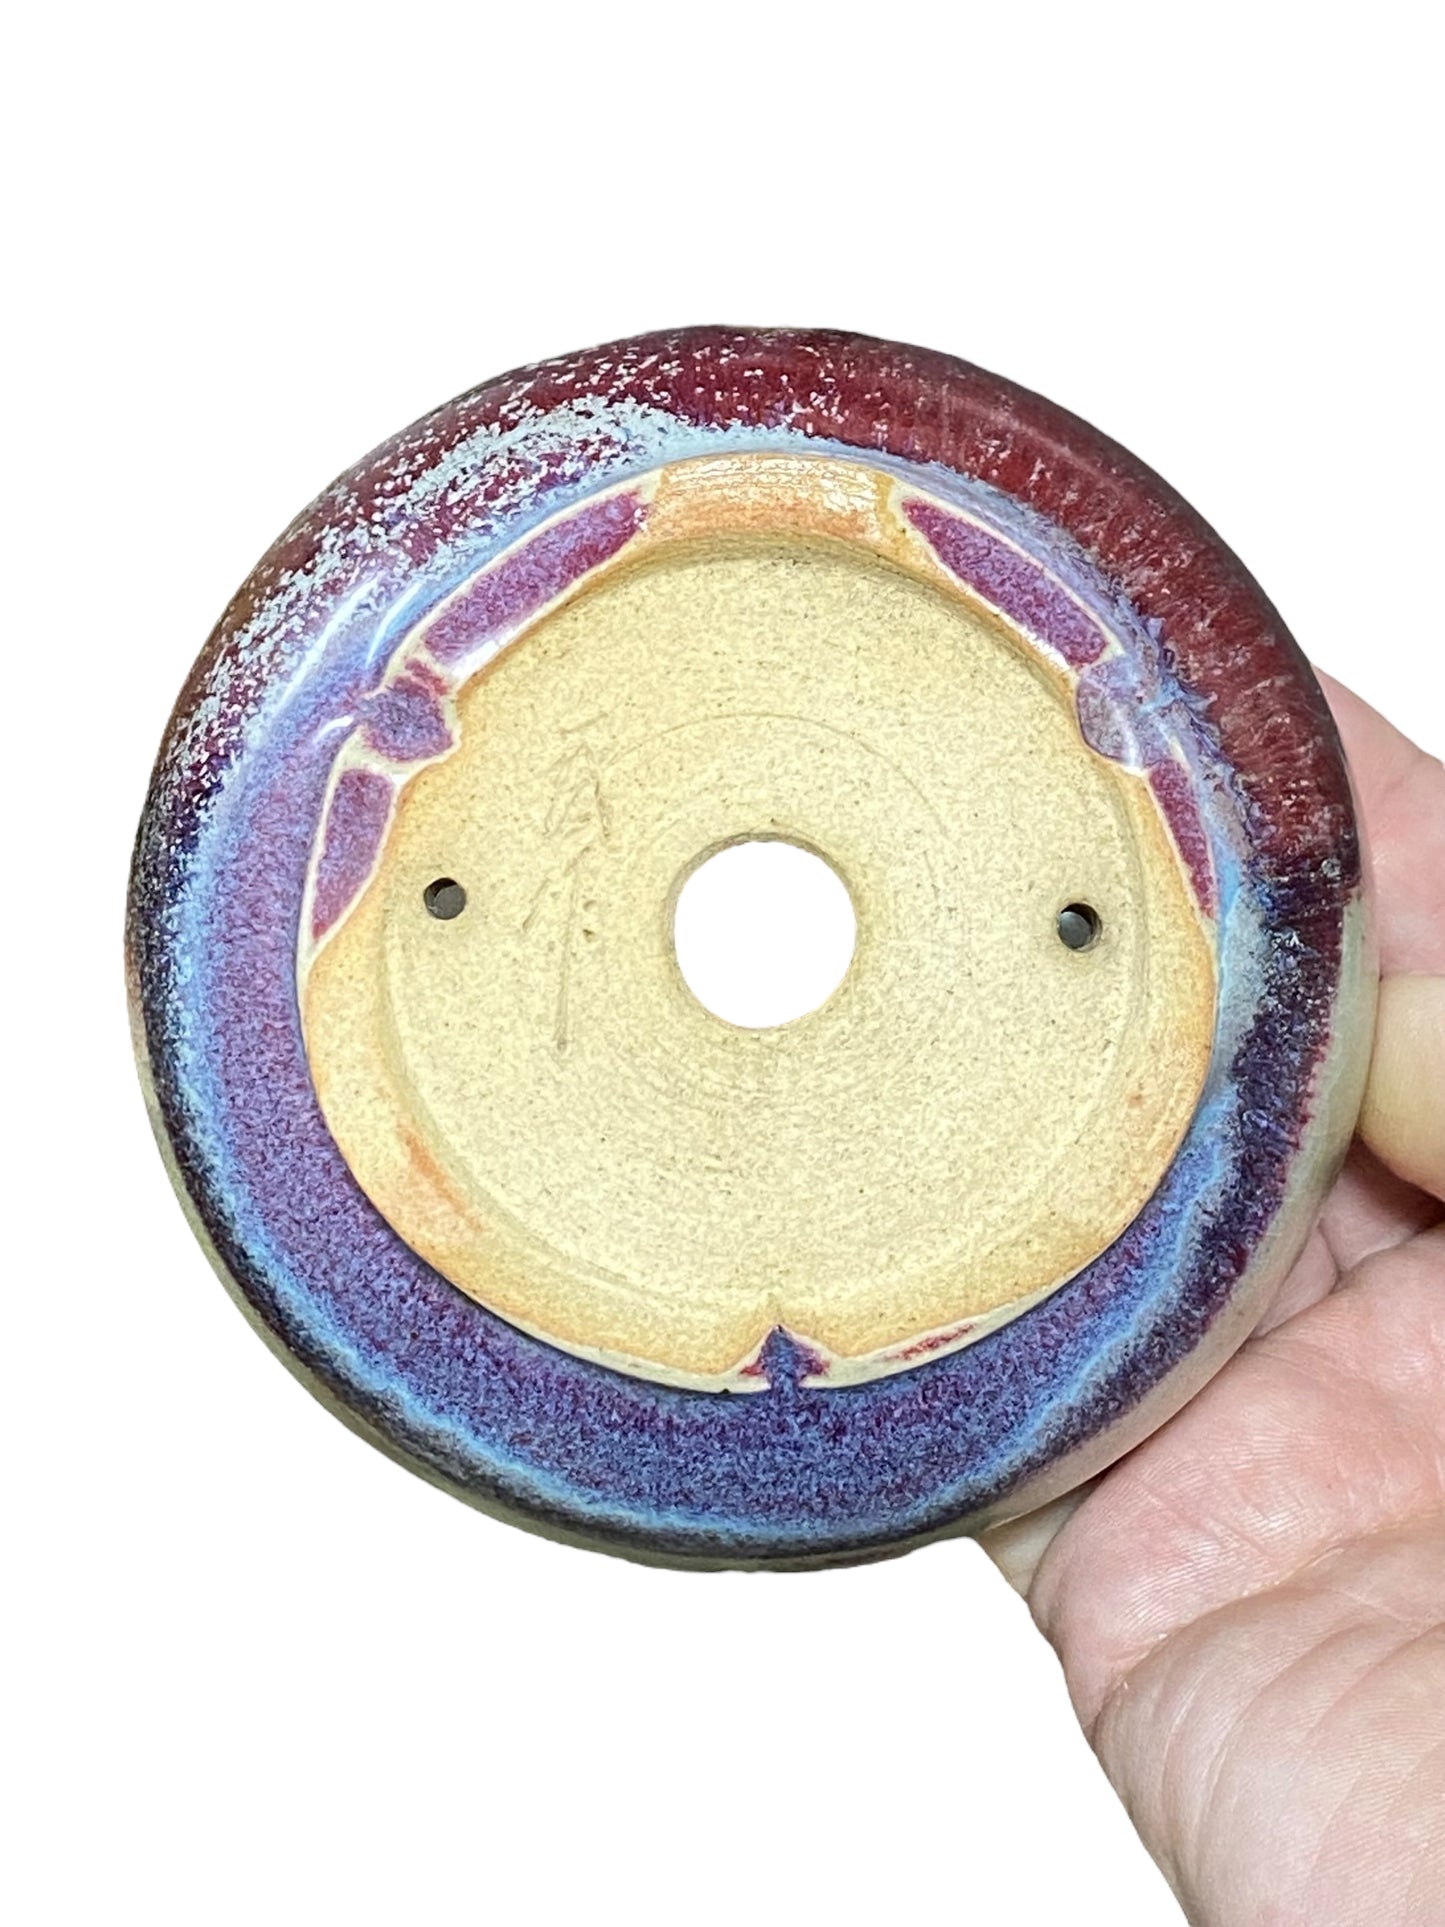 Isso - Multicolor Glazed Bowl Bonsai or Accent Pot